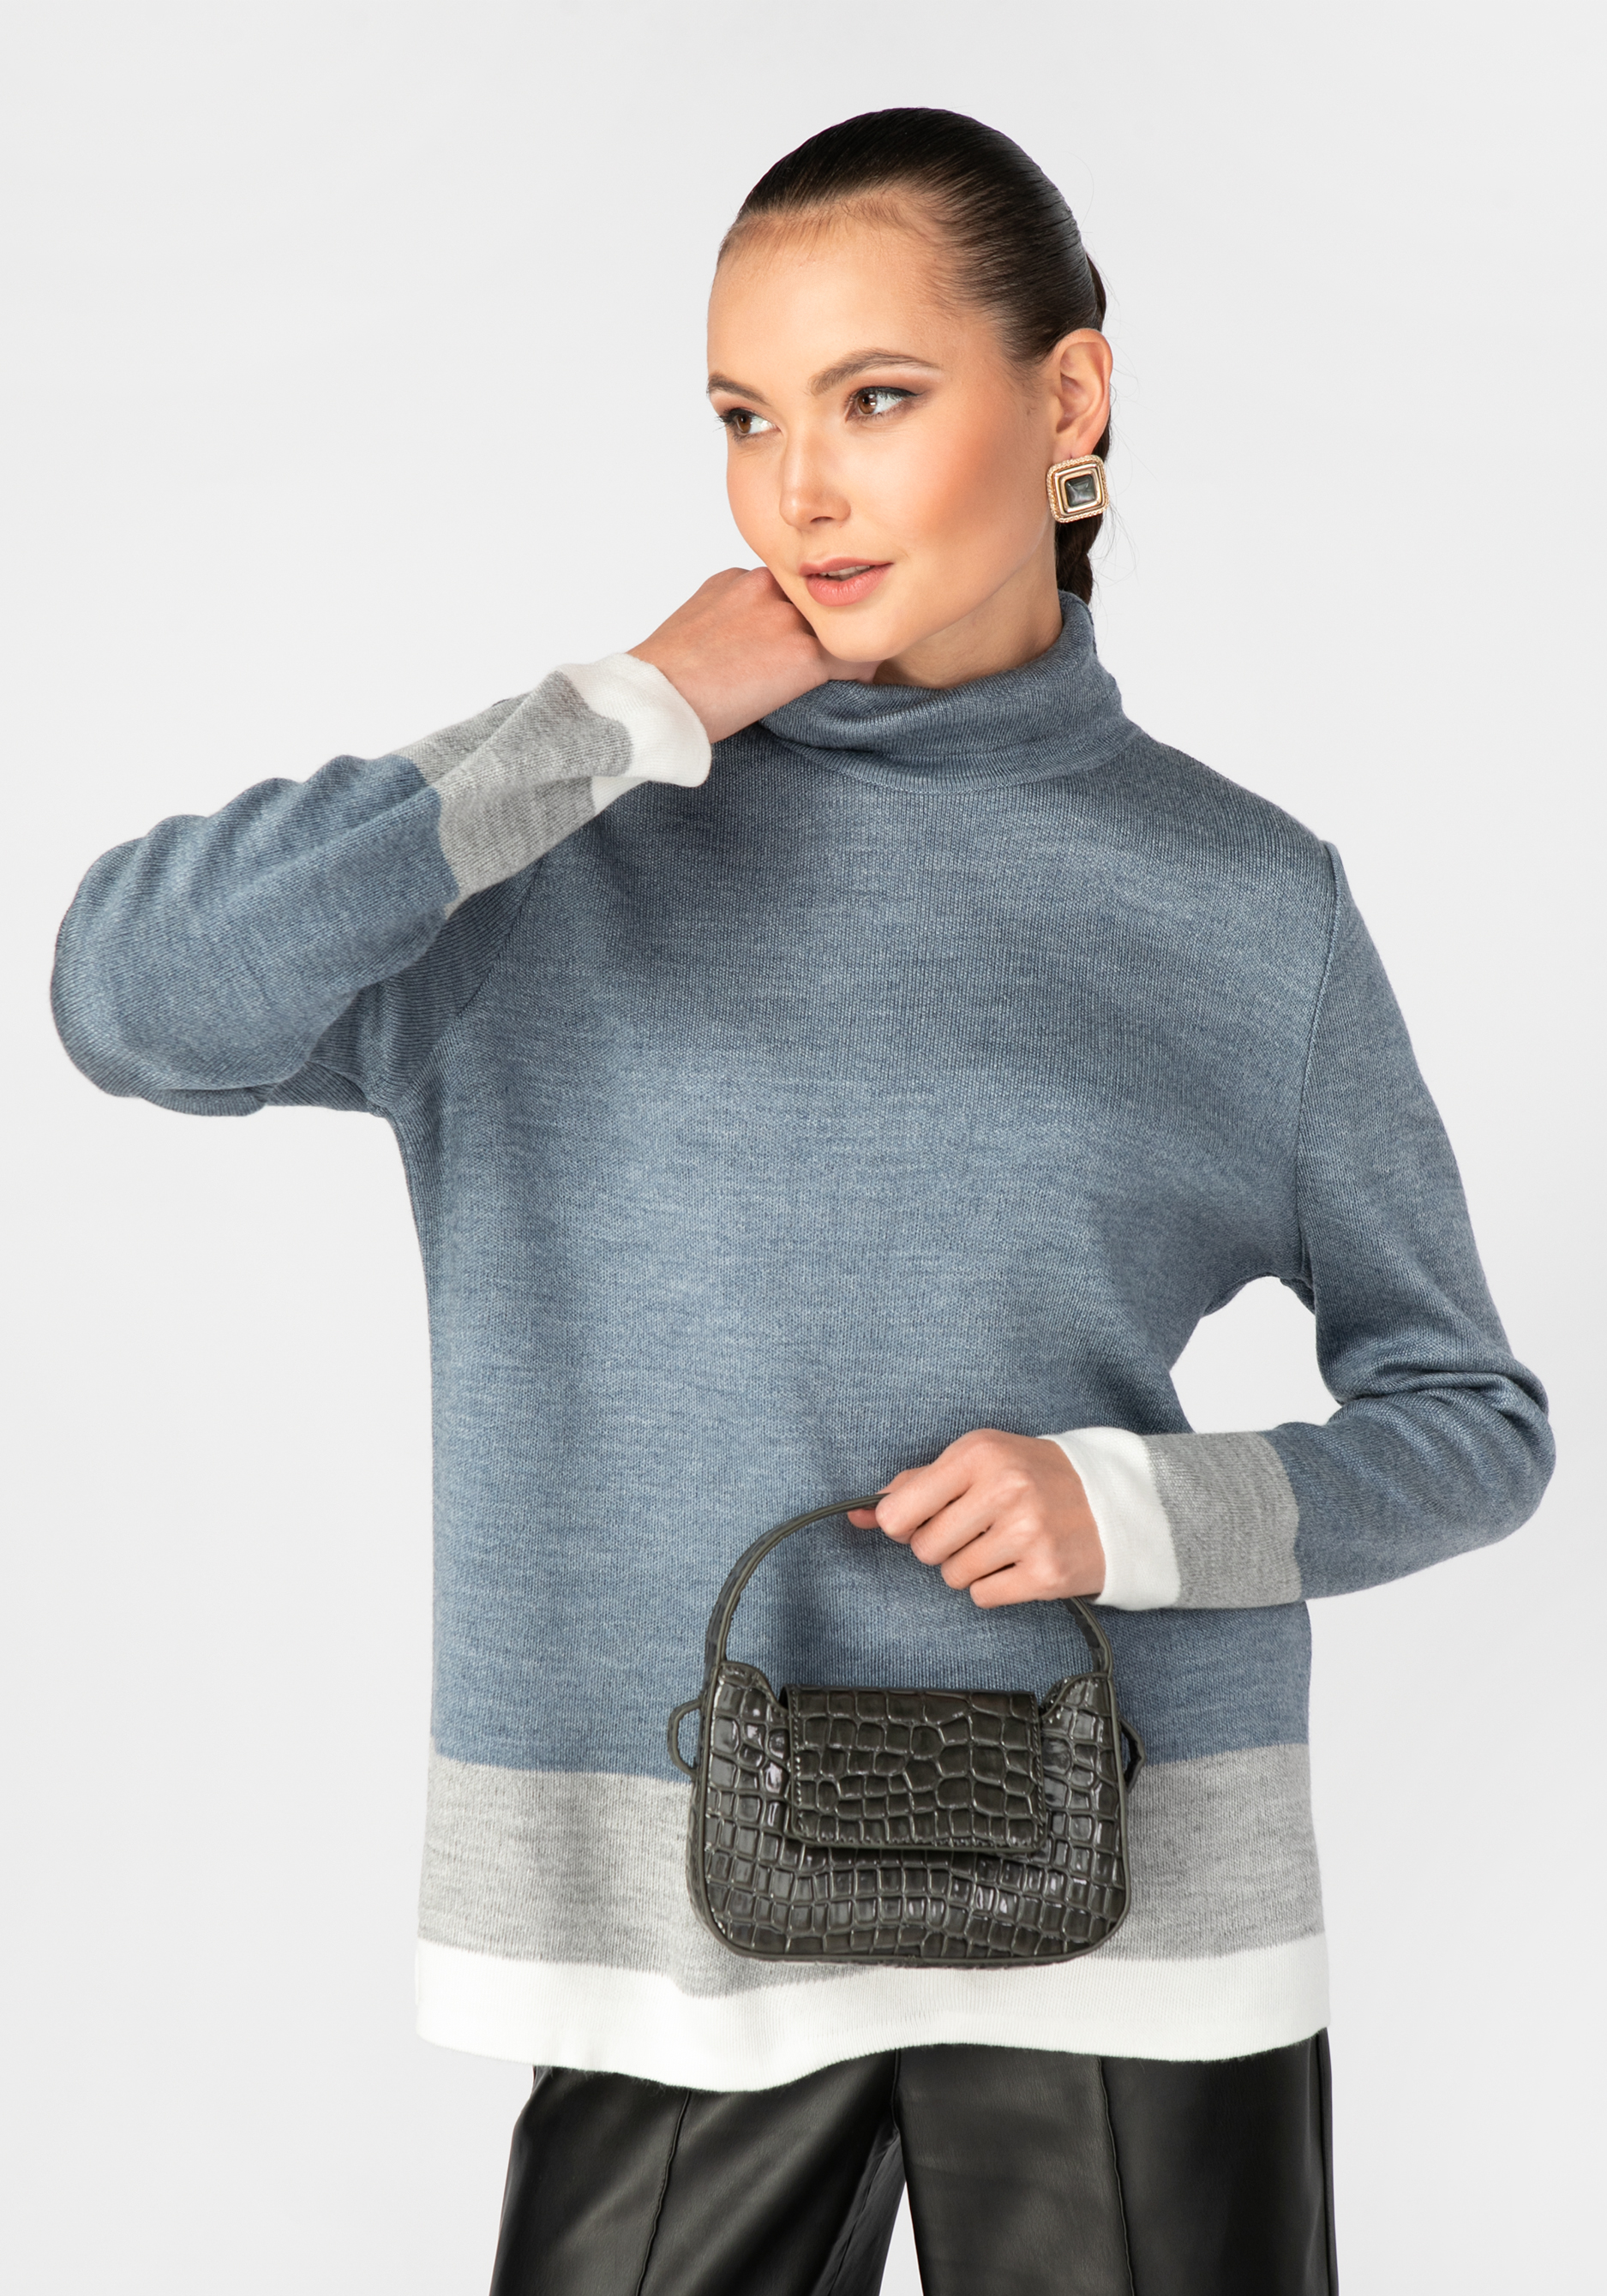 Свитер женский с контрастными полосами royal pet свитер лапка синий m